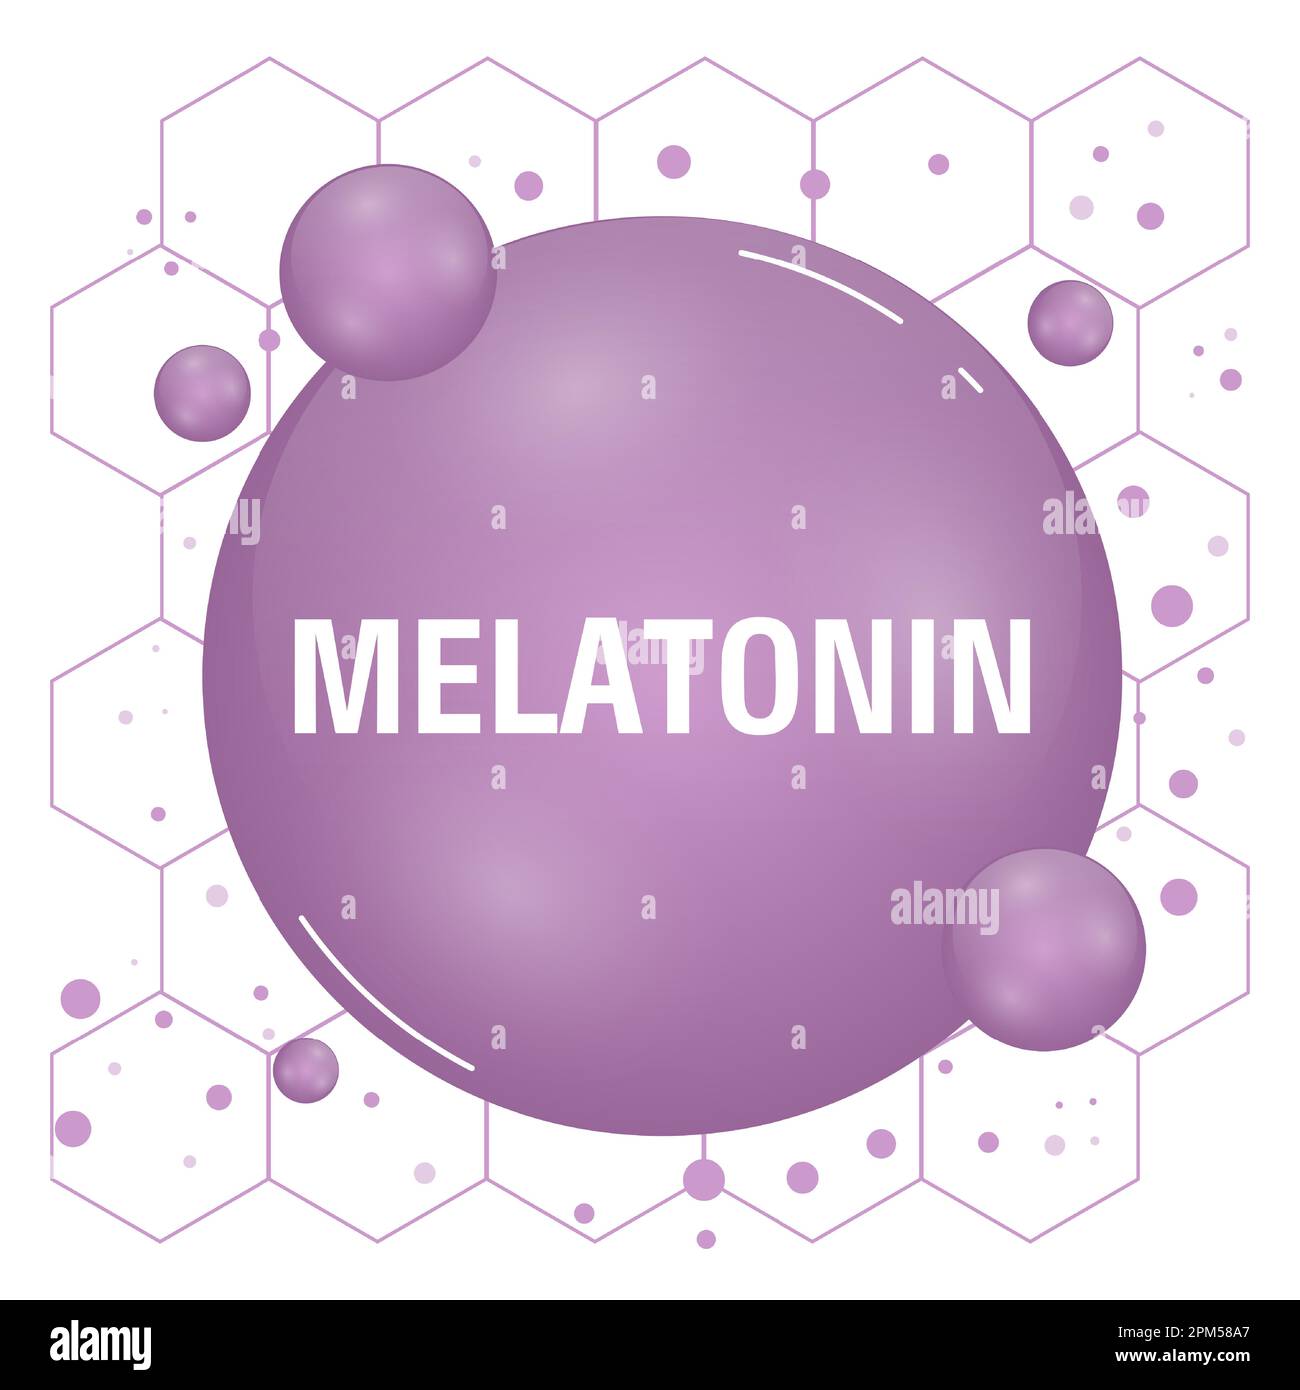 Melatonin-Hormonmolekül. Spielt eine Rolle bei der Synchronisierung des zirkadianen Rhythmus. Vektordarstellung Stock Vektor